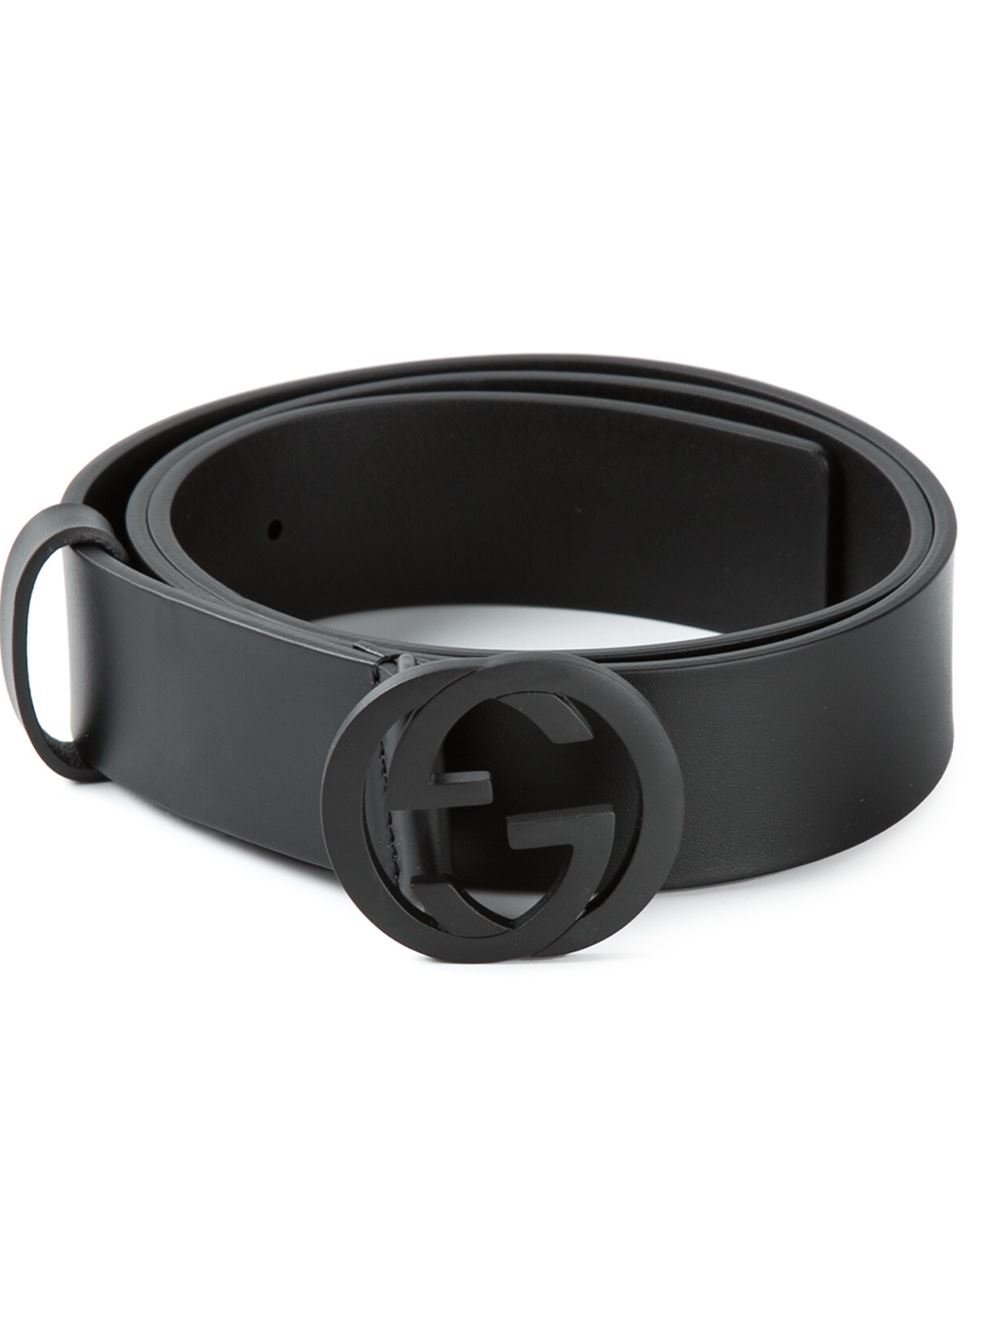 Gucci Logo Belt in Black for Men - Lyst